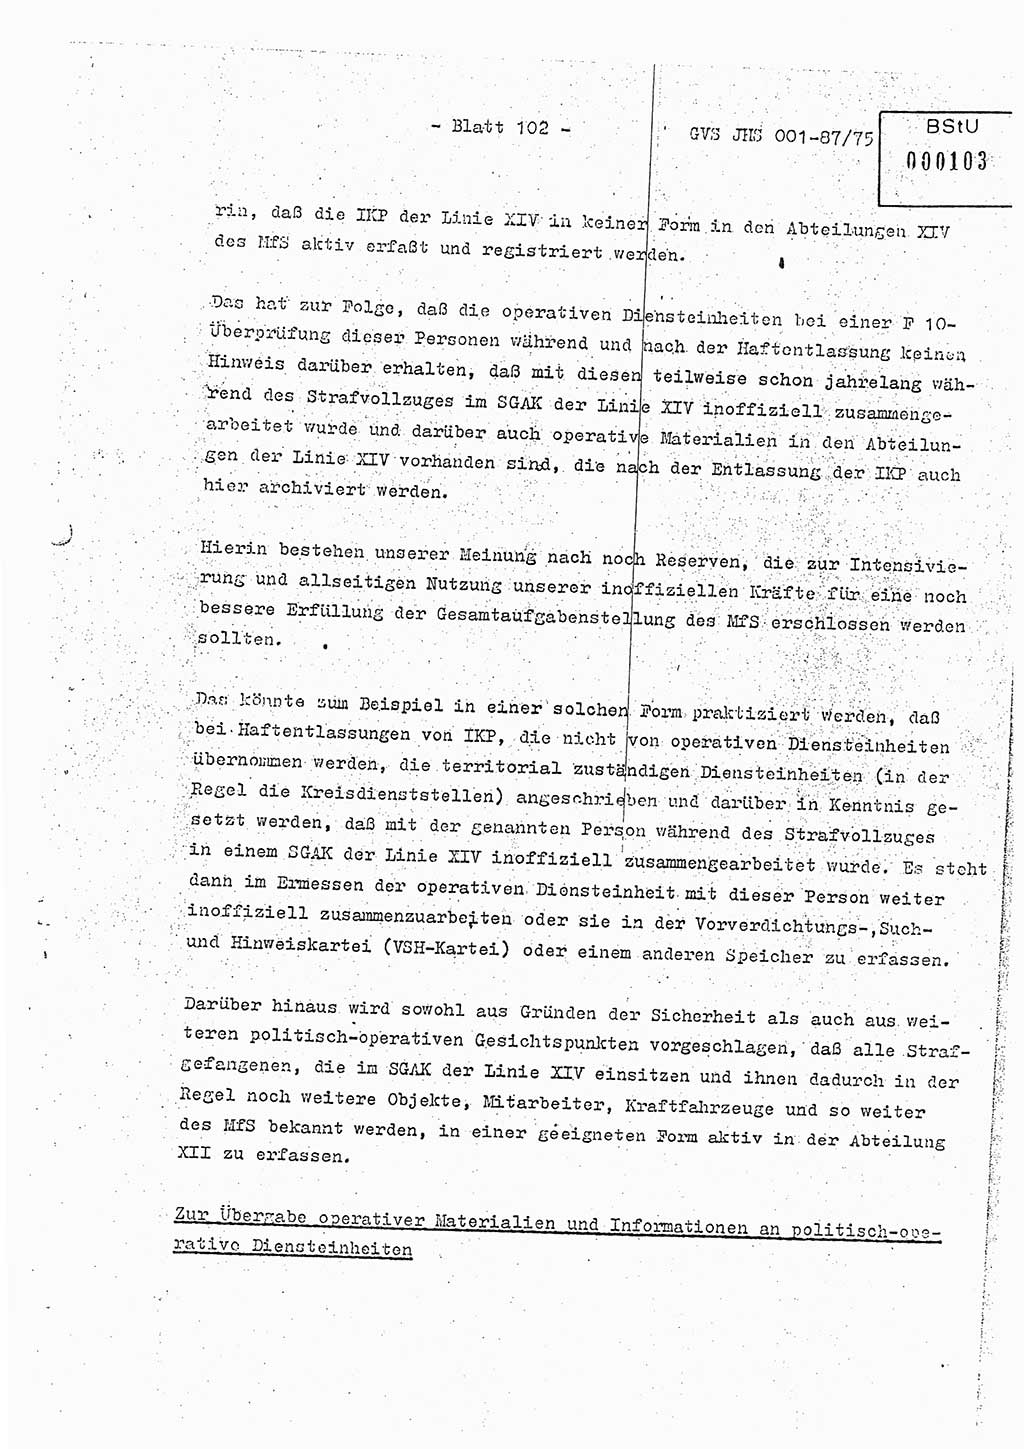 Diplomarbeit Hauptmann Volkmar Heinz (Abt. ⅩⅣ), Oberleutnant Lothar Rüdiger (BV Lpz. Abt. Ⅺ), Ministerium für Staatssicherheit (MfS) [Deutsche Demokratische Republik (DDR)], Juristische Hochschule (JHS), Geheime Verschlußsache (GVS) o001-87/75, Potsdam 1975, Seite 102 (Dipl.-Arb. MfS DDR JHS GVS o001-87/75 1975, S. 102)